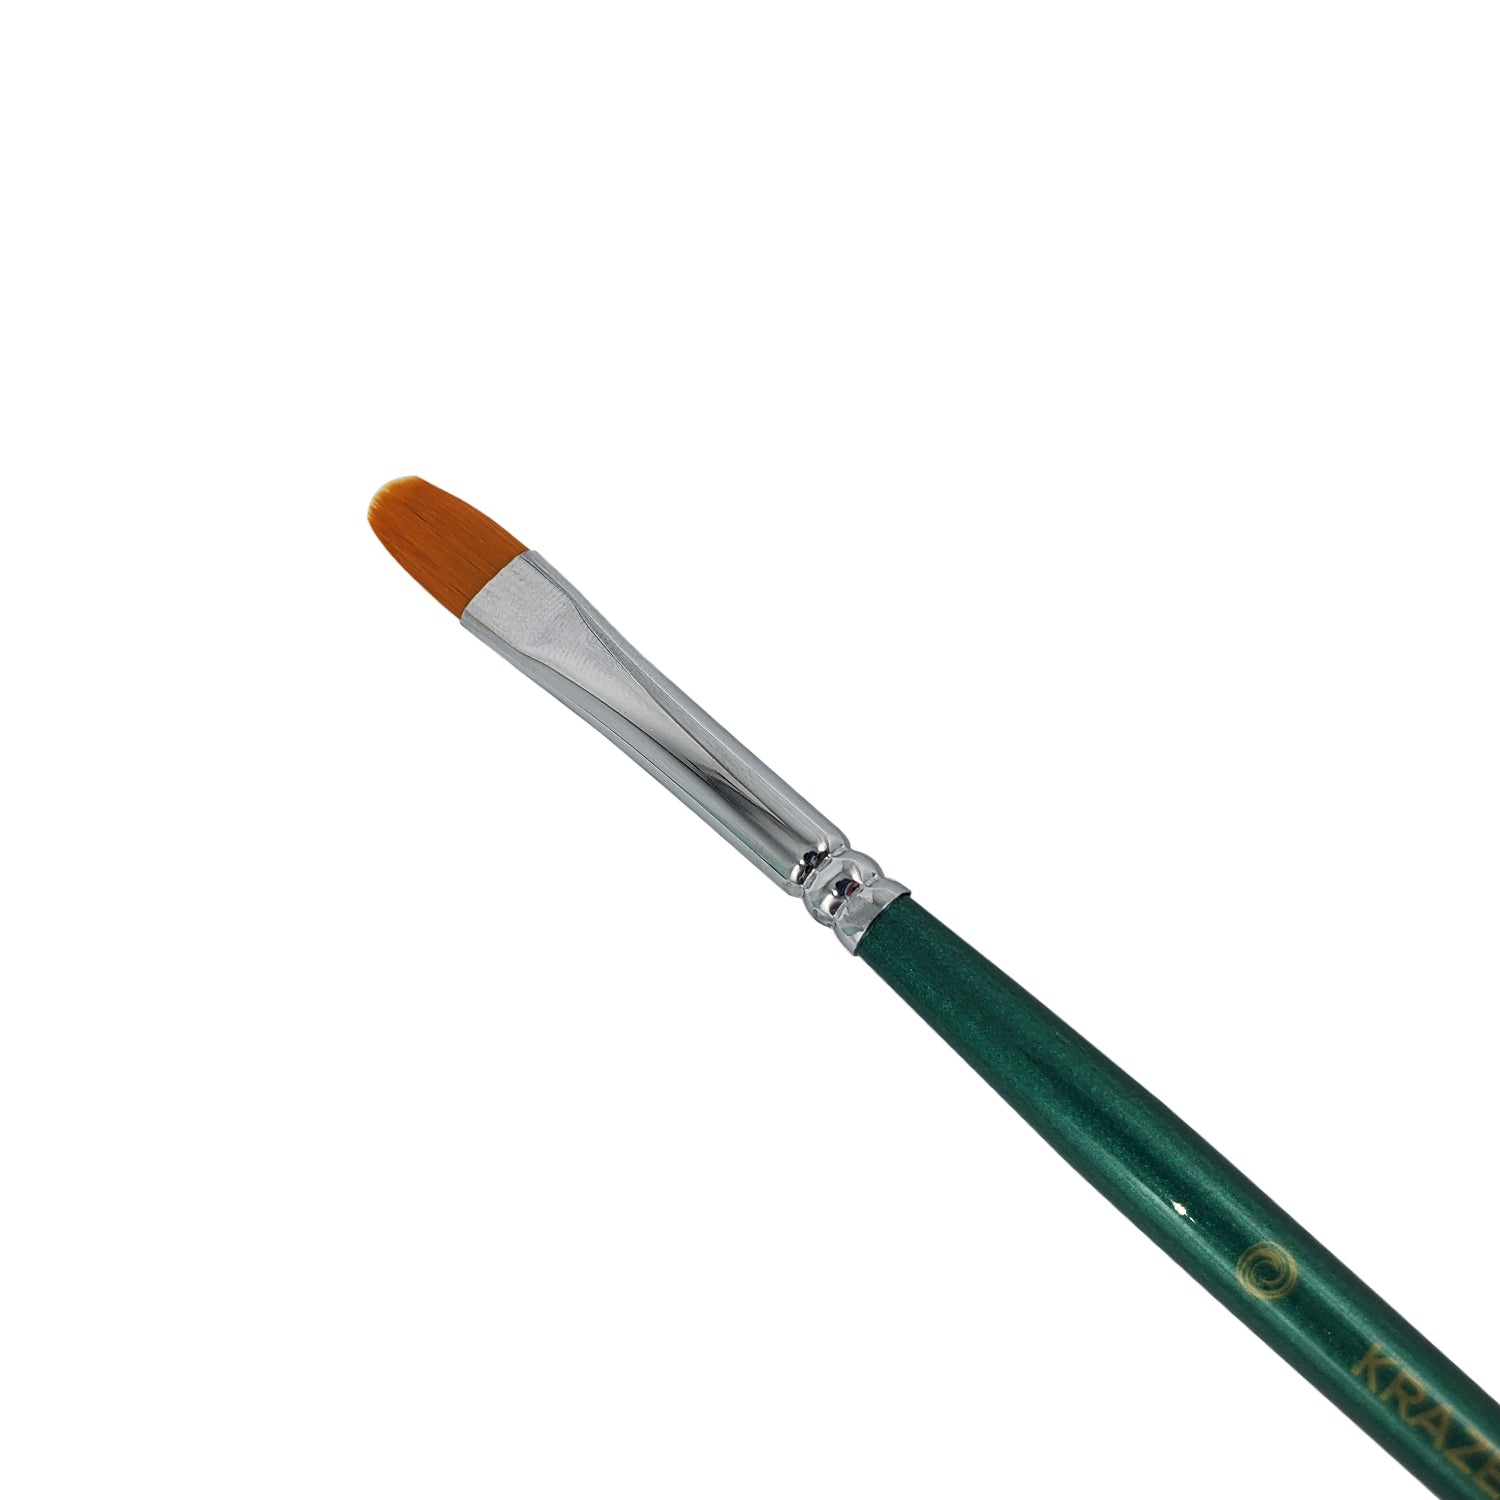 Kraze FX Filbert Brush - Small, Professional Face Paint Brushes